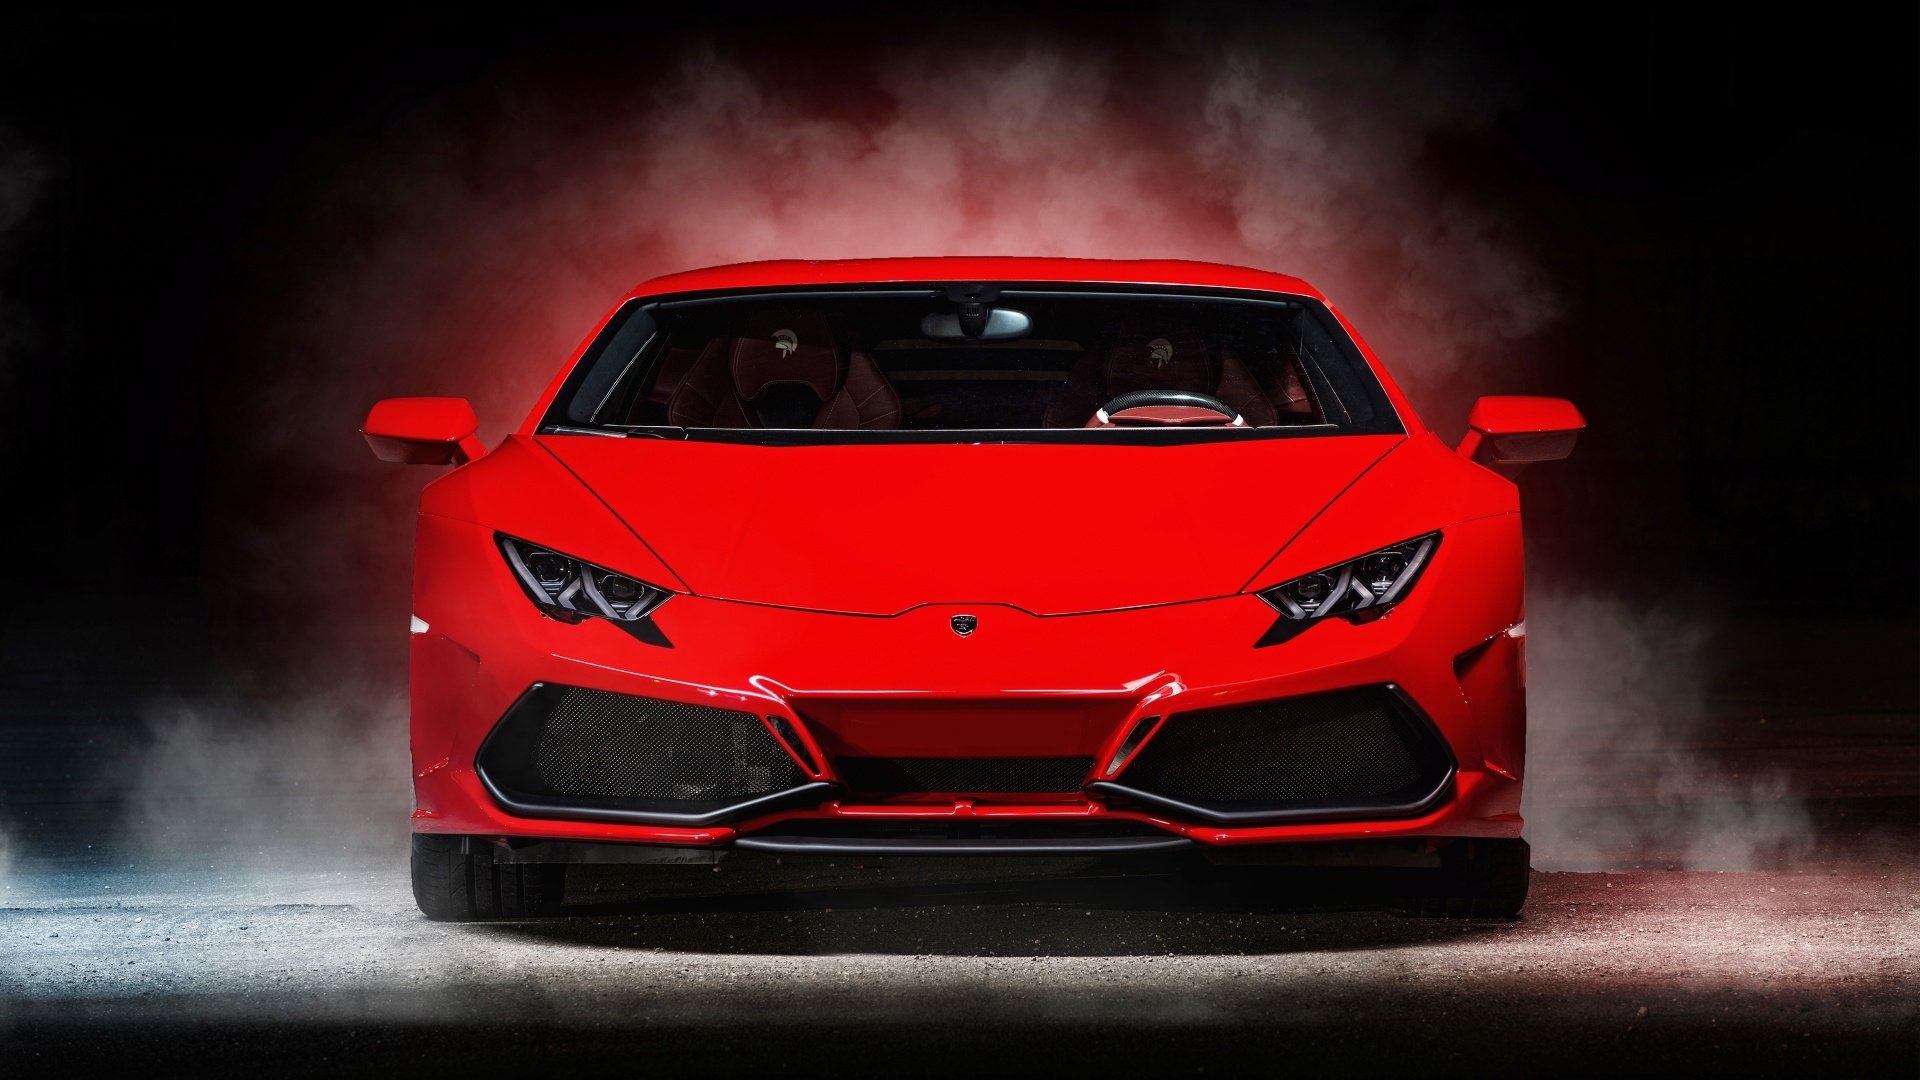 2015, Ares, Design, Lamborghini, Huracan 1920x1080 Wallpaper